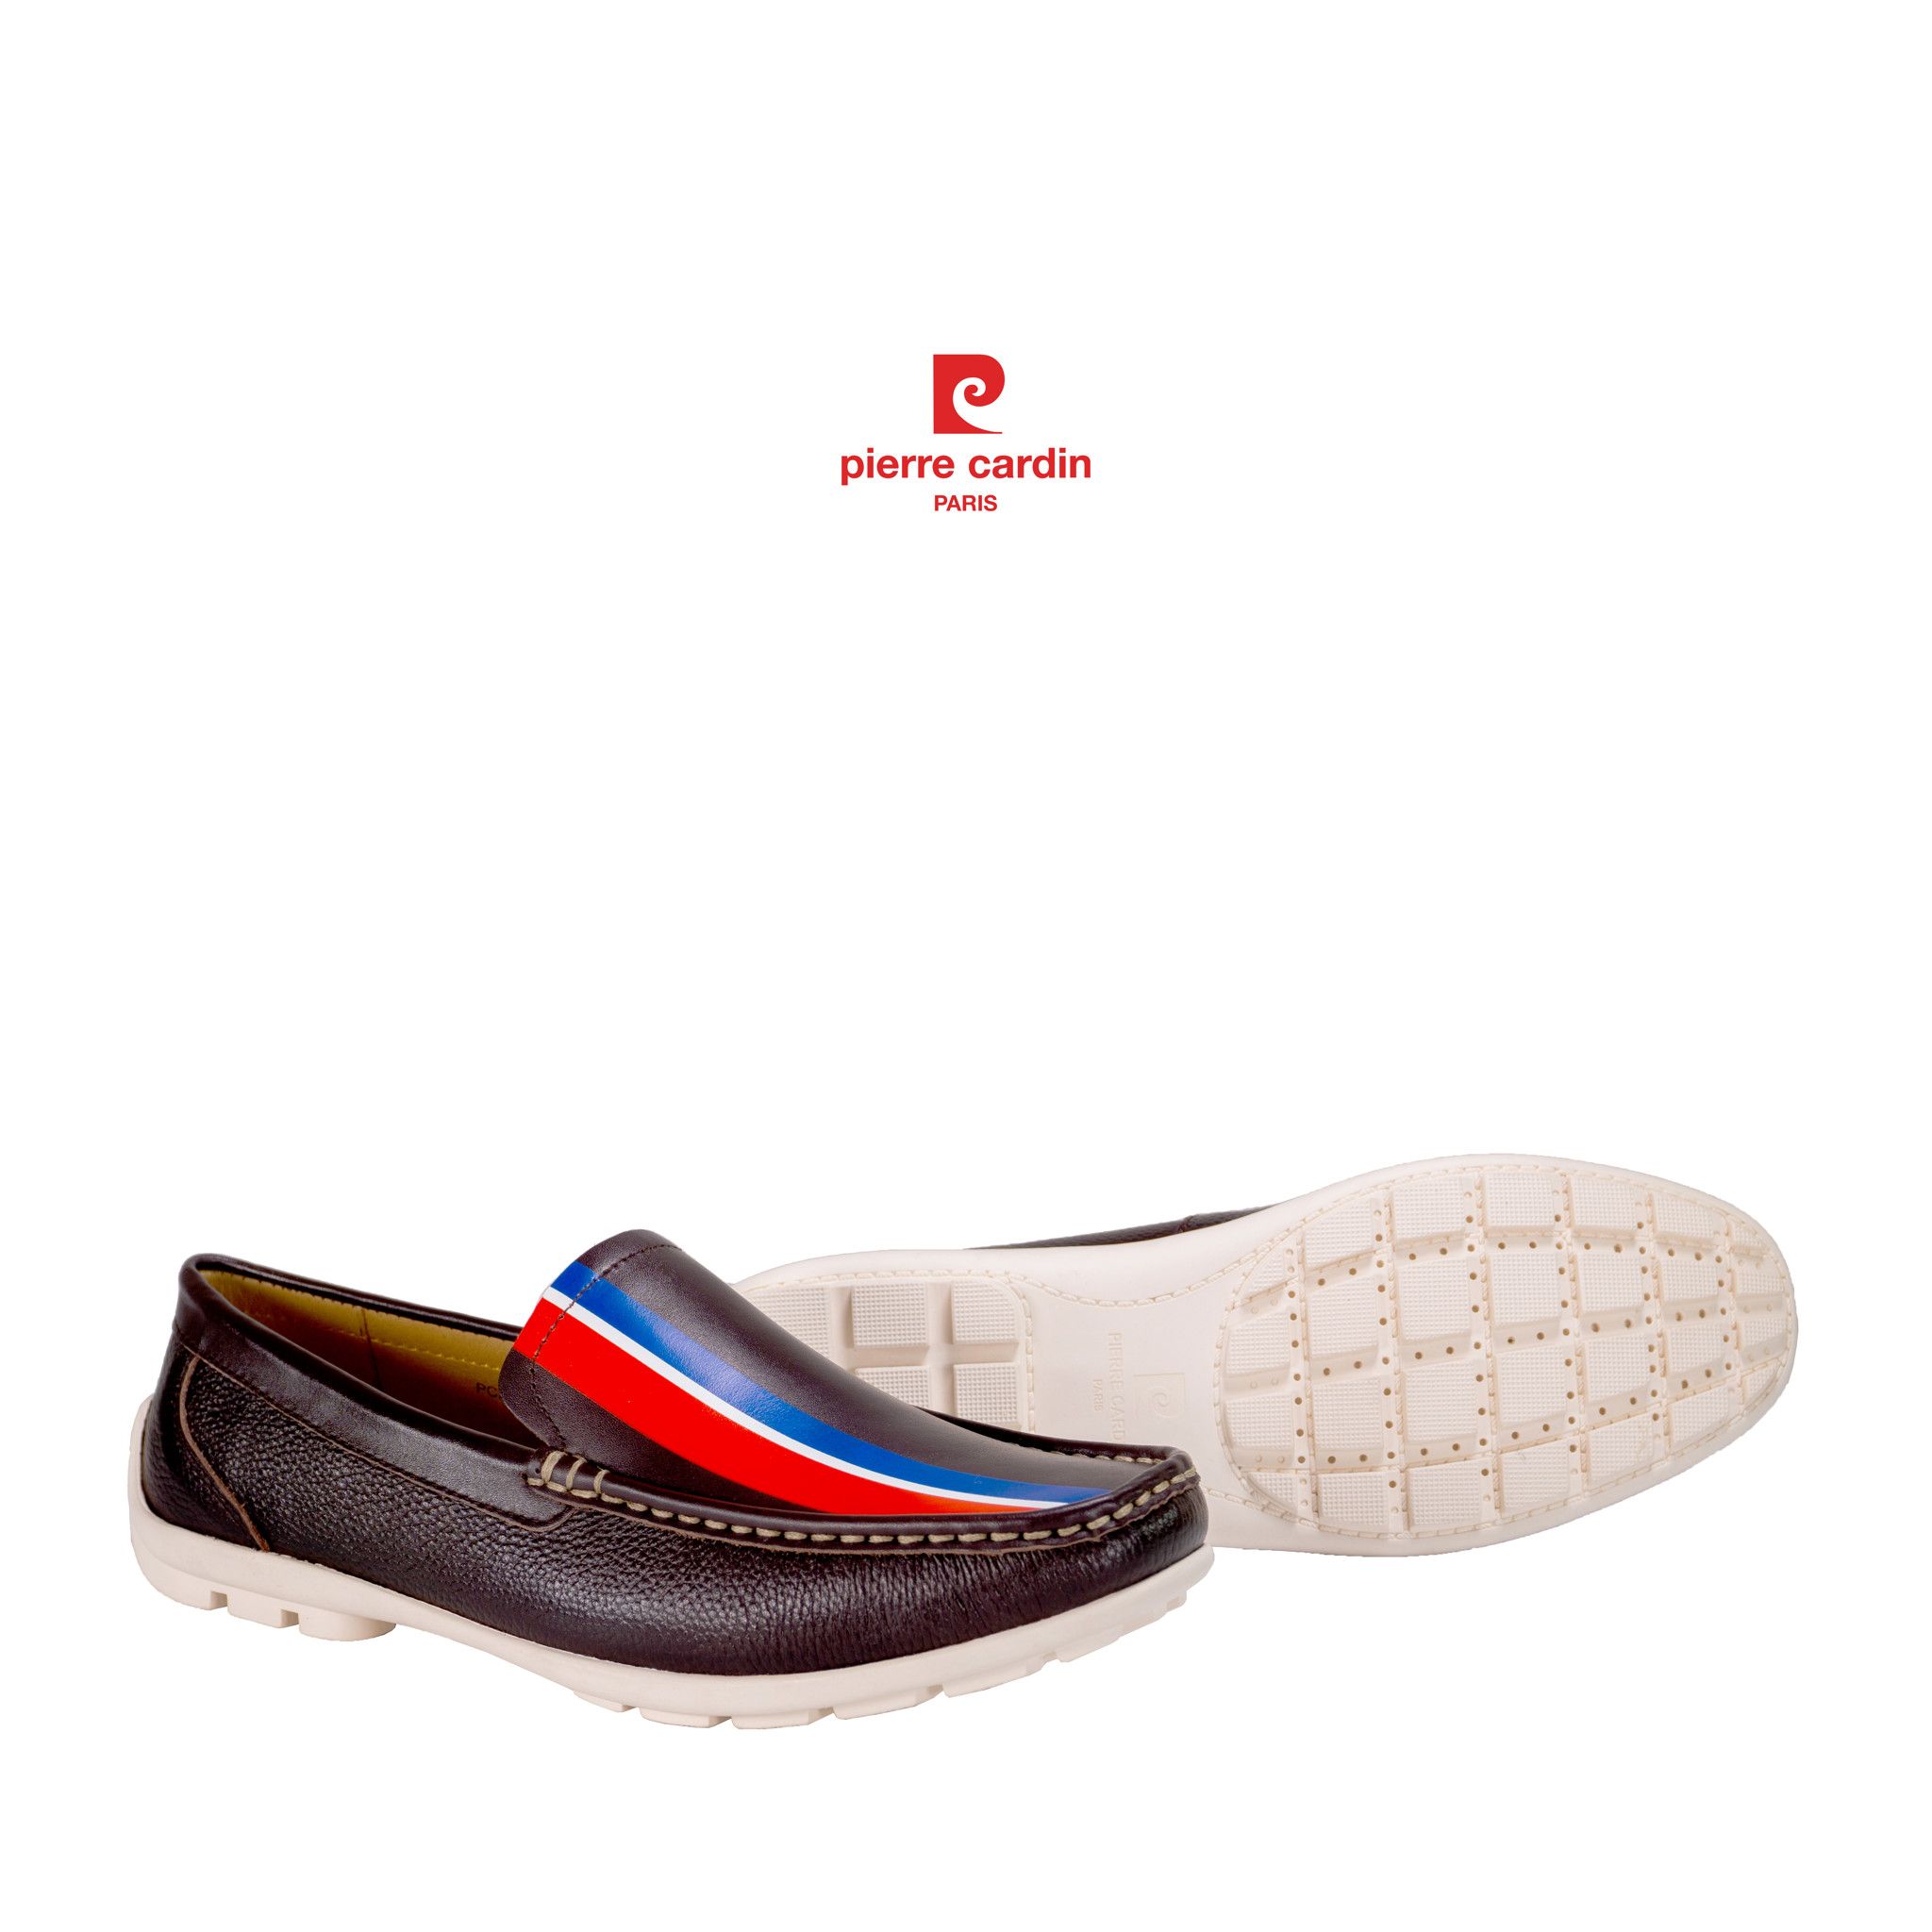 Pierre Cardin Paris Vietnam: France Symbols Driving Shoes - PCMWLF 513